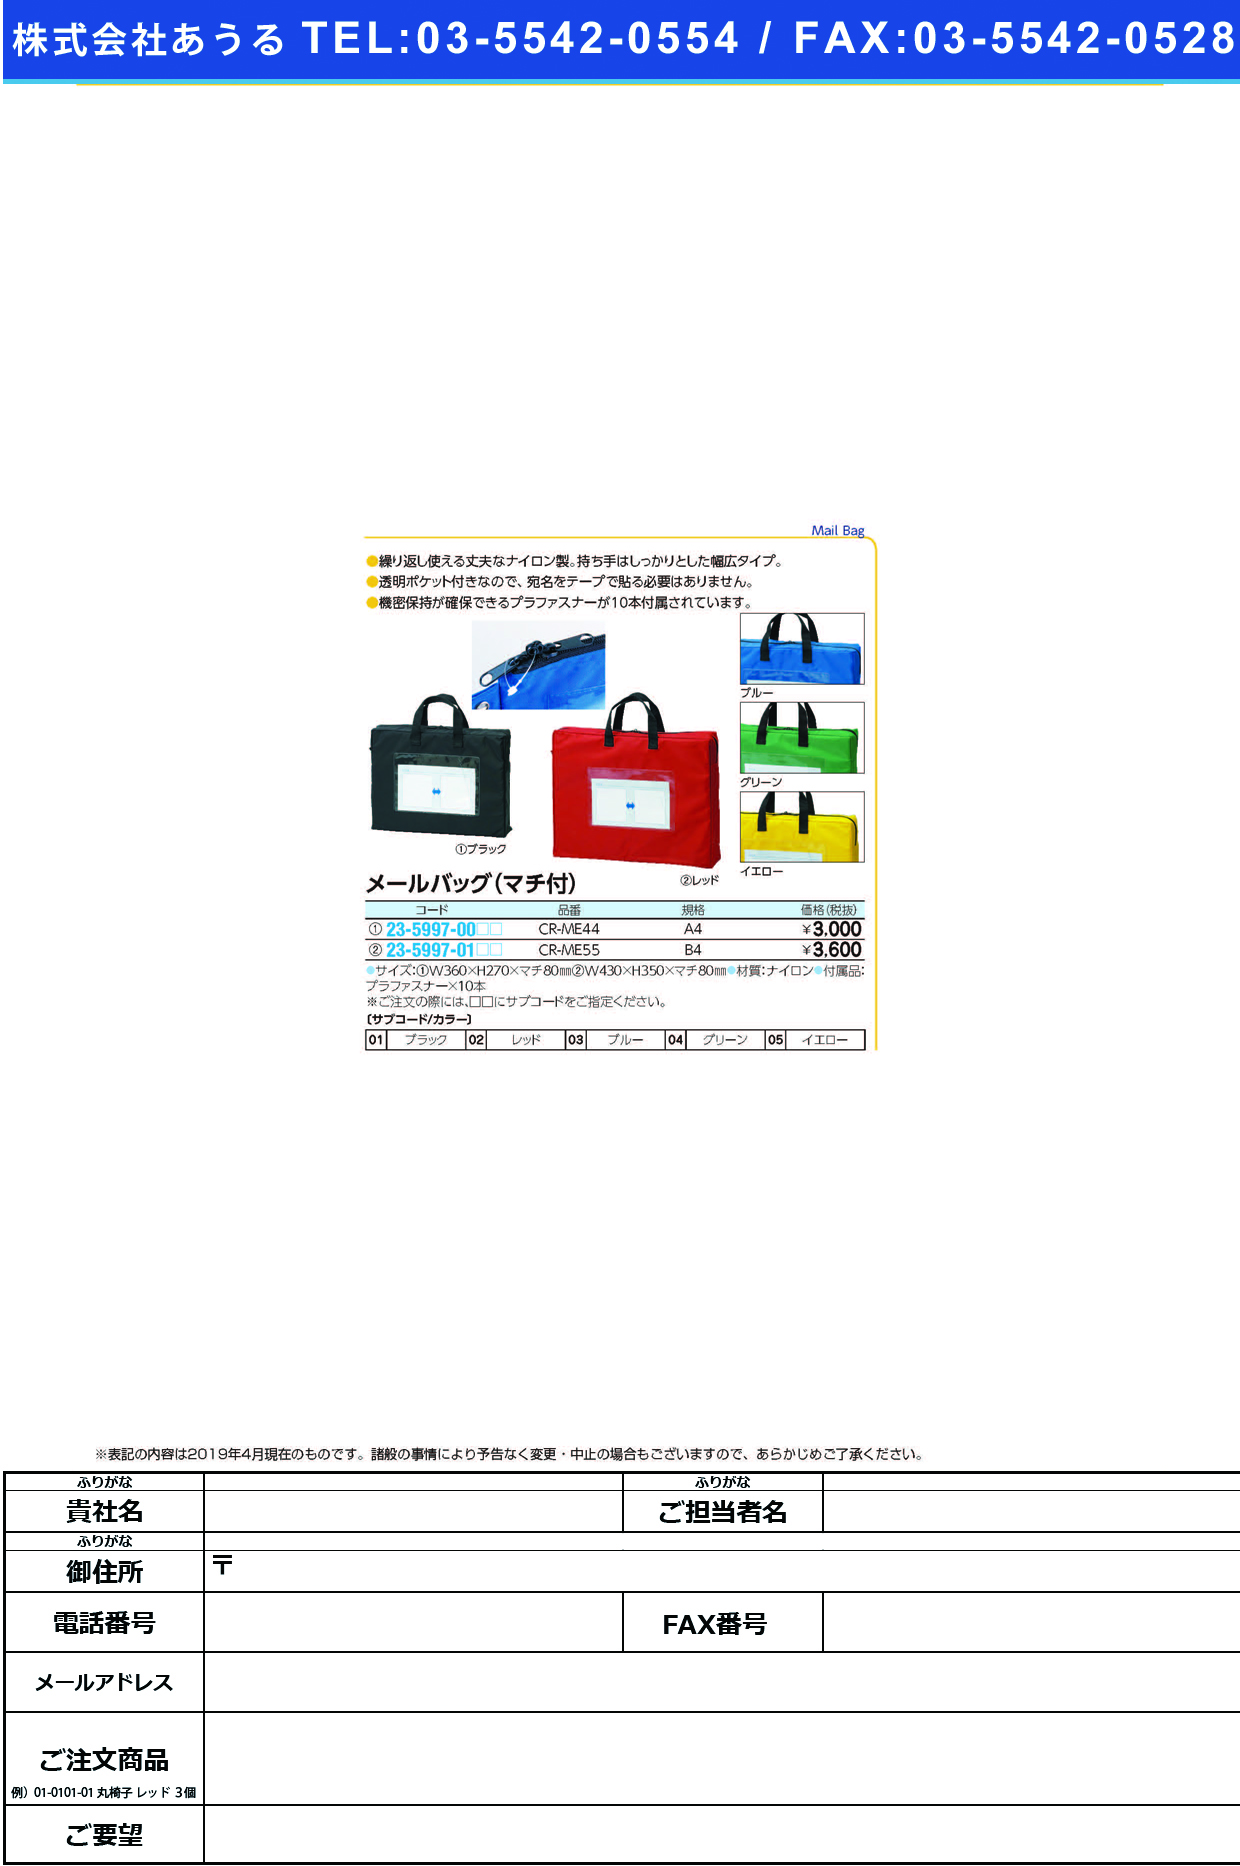 (23-5997-00)メールバッグ（マチ付） CR-ME44(A4) ﾒｰﾙﾊﾞｯｸﾞ(ﾏﾁﾂｷ) ブルー【1個単位】【2019年カタログ商品】